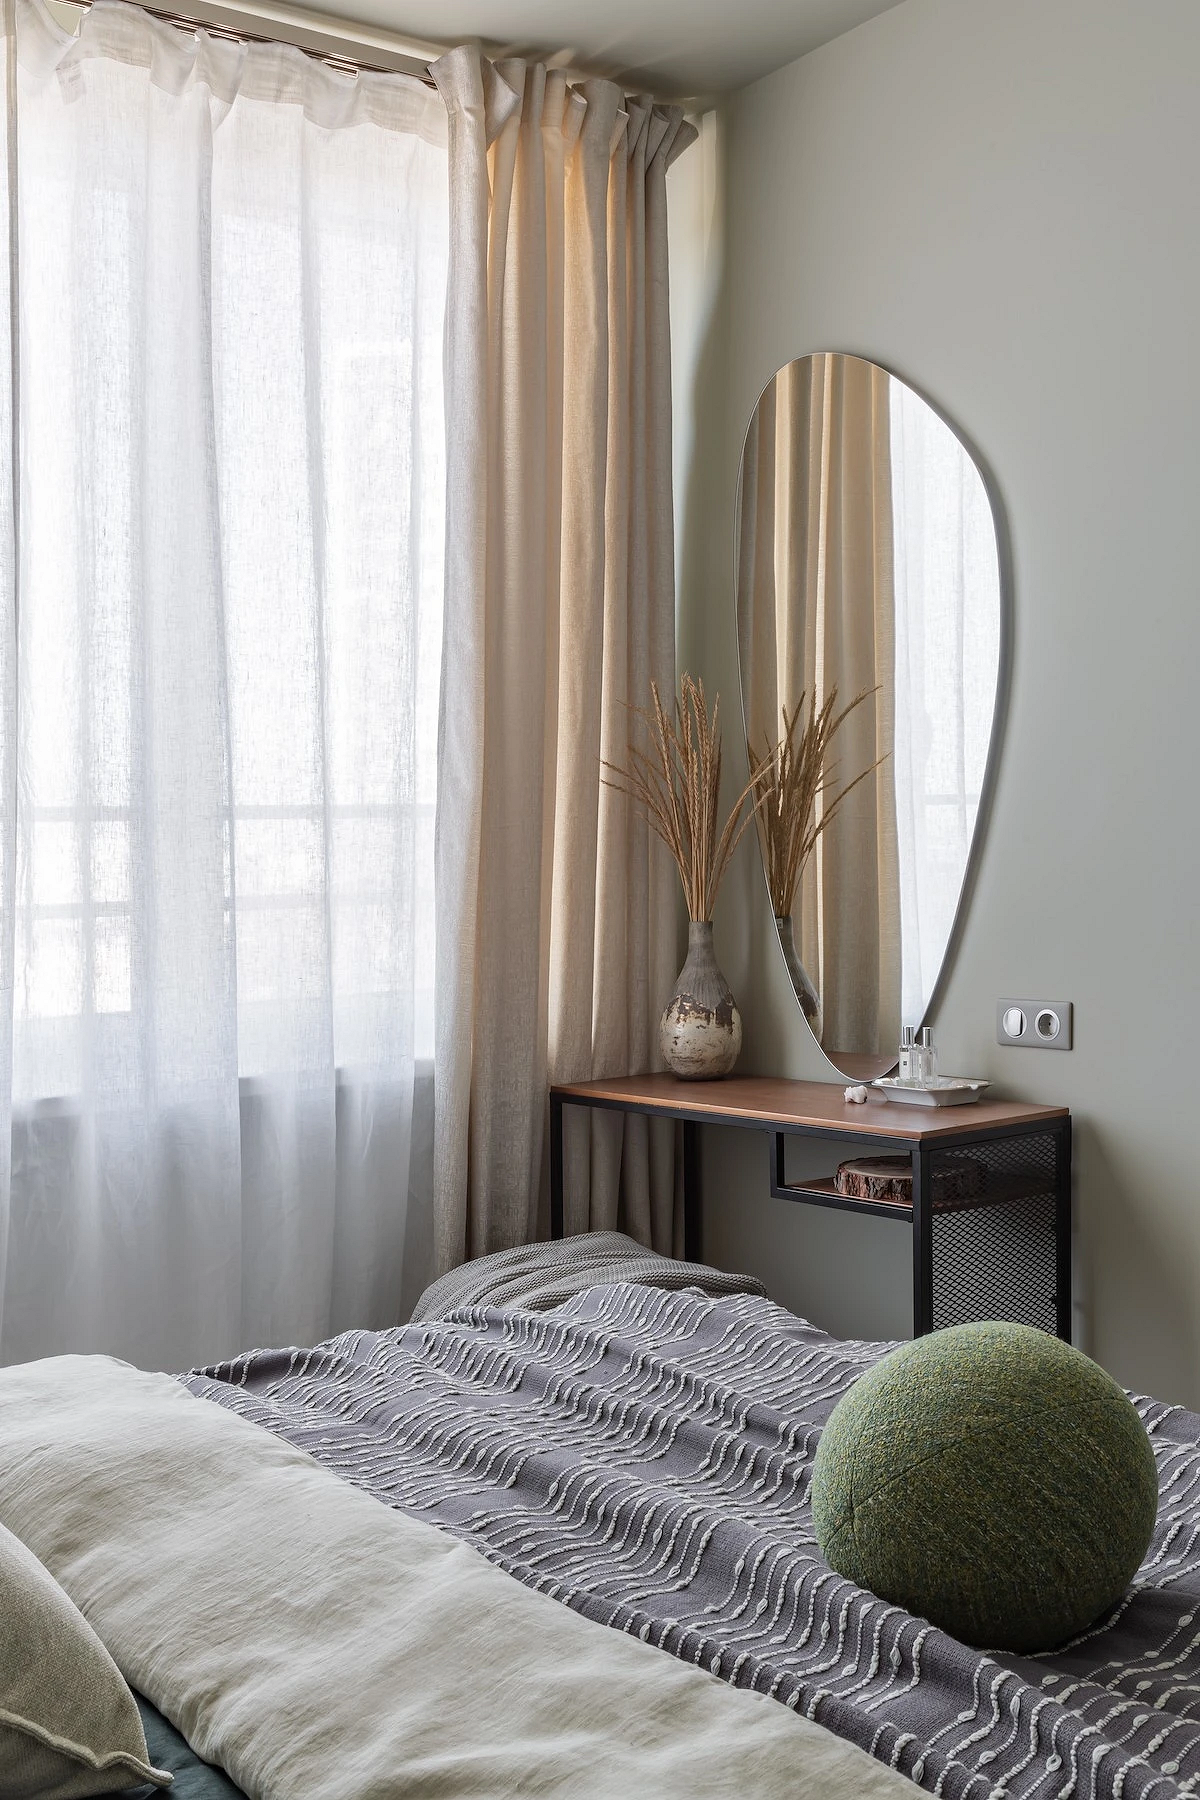 Как дизайнеры оформляют свои спальни? 6 красивых комнат из проектов профи11